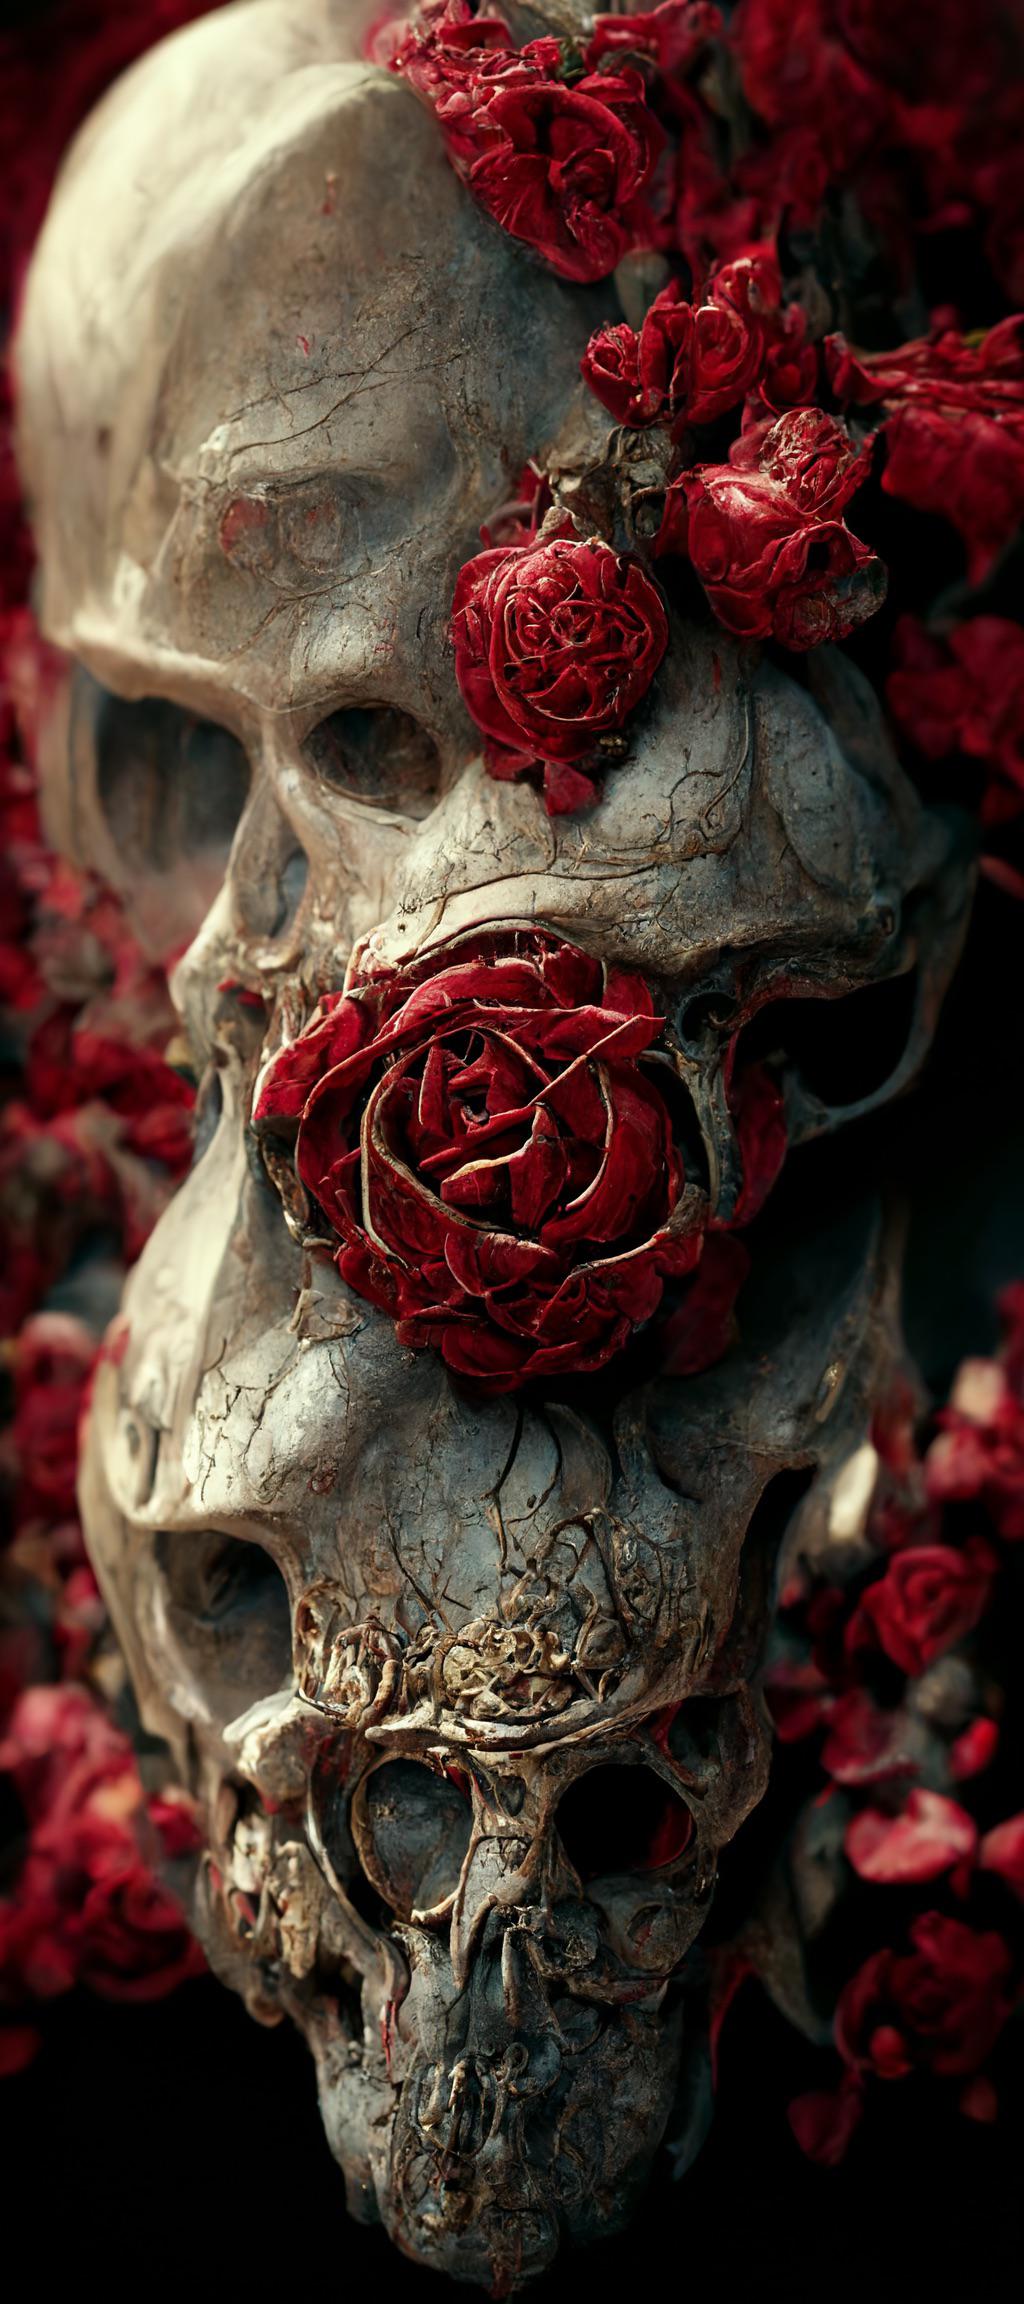 Download Skull Roses Thorns RoyaltyFree Stock Illustration Image  Pixabay